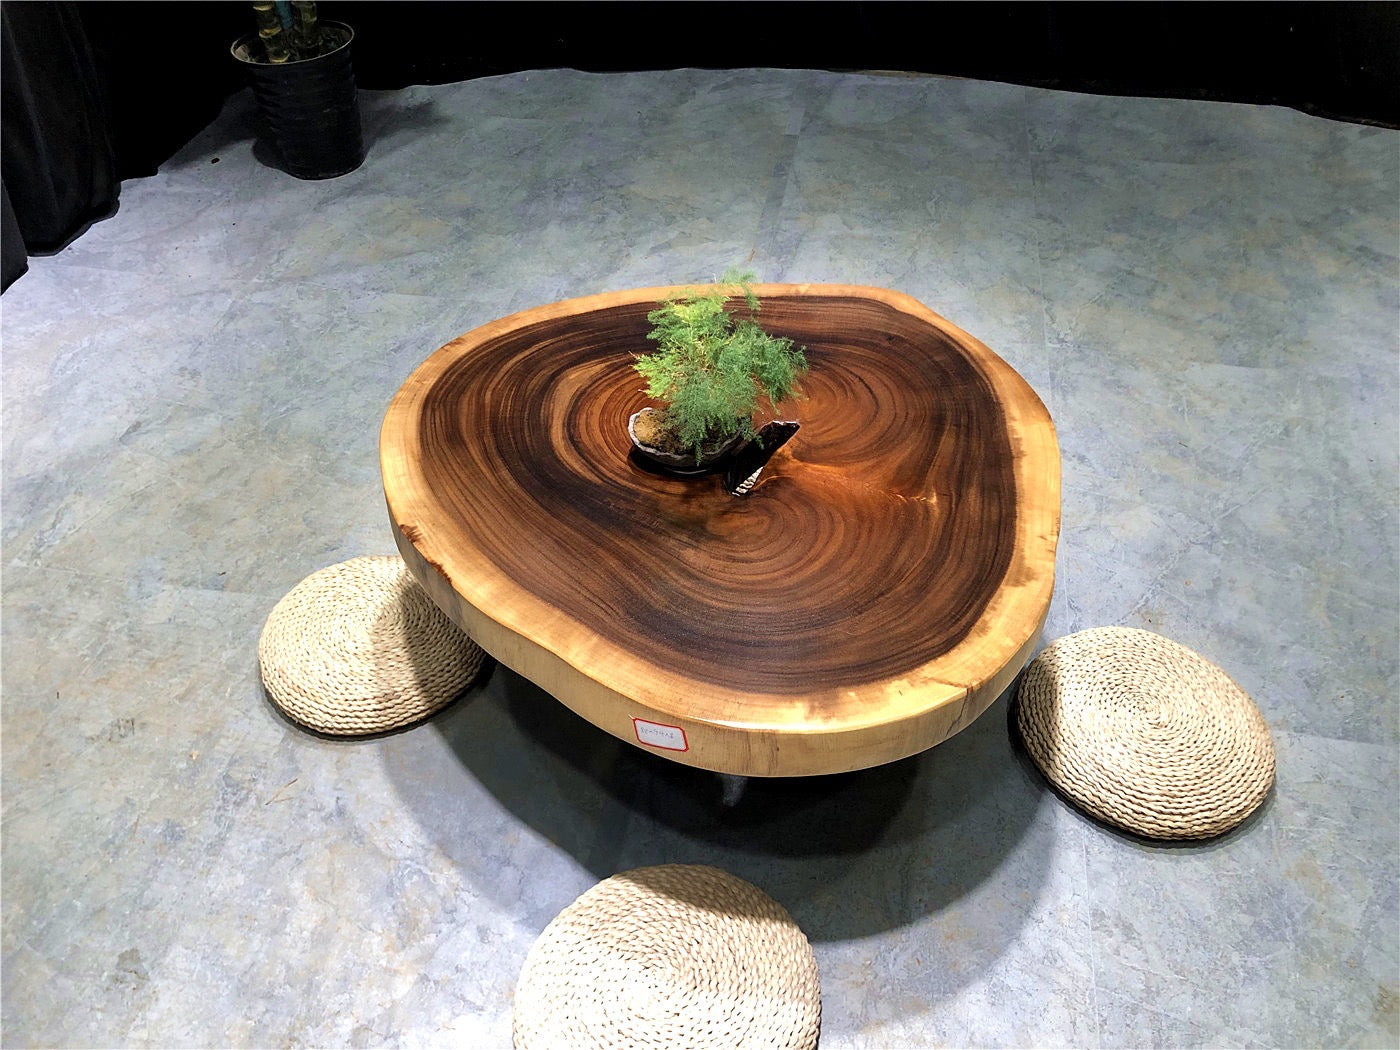 tavolino in cassa e botte, tavolino rotondo in legno naturale con bordo vivo